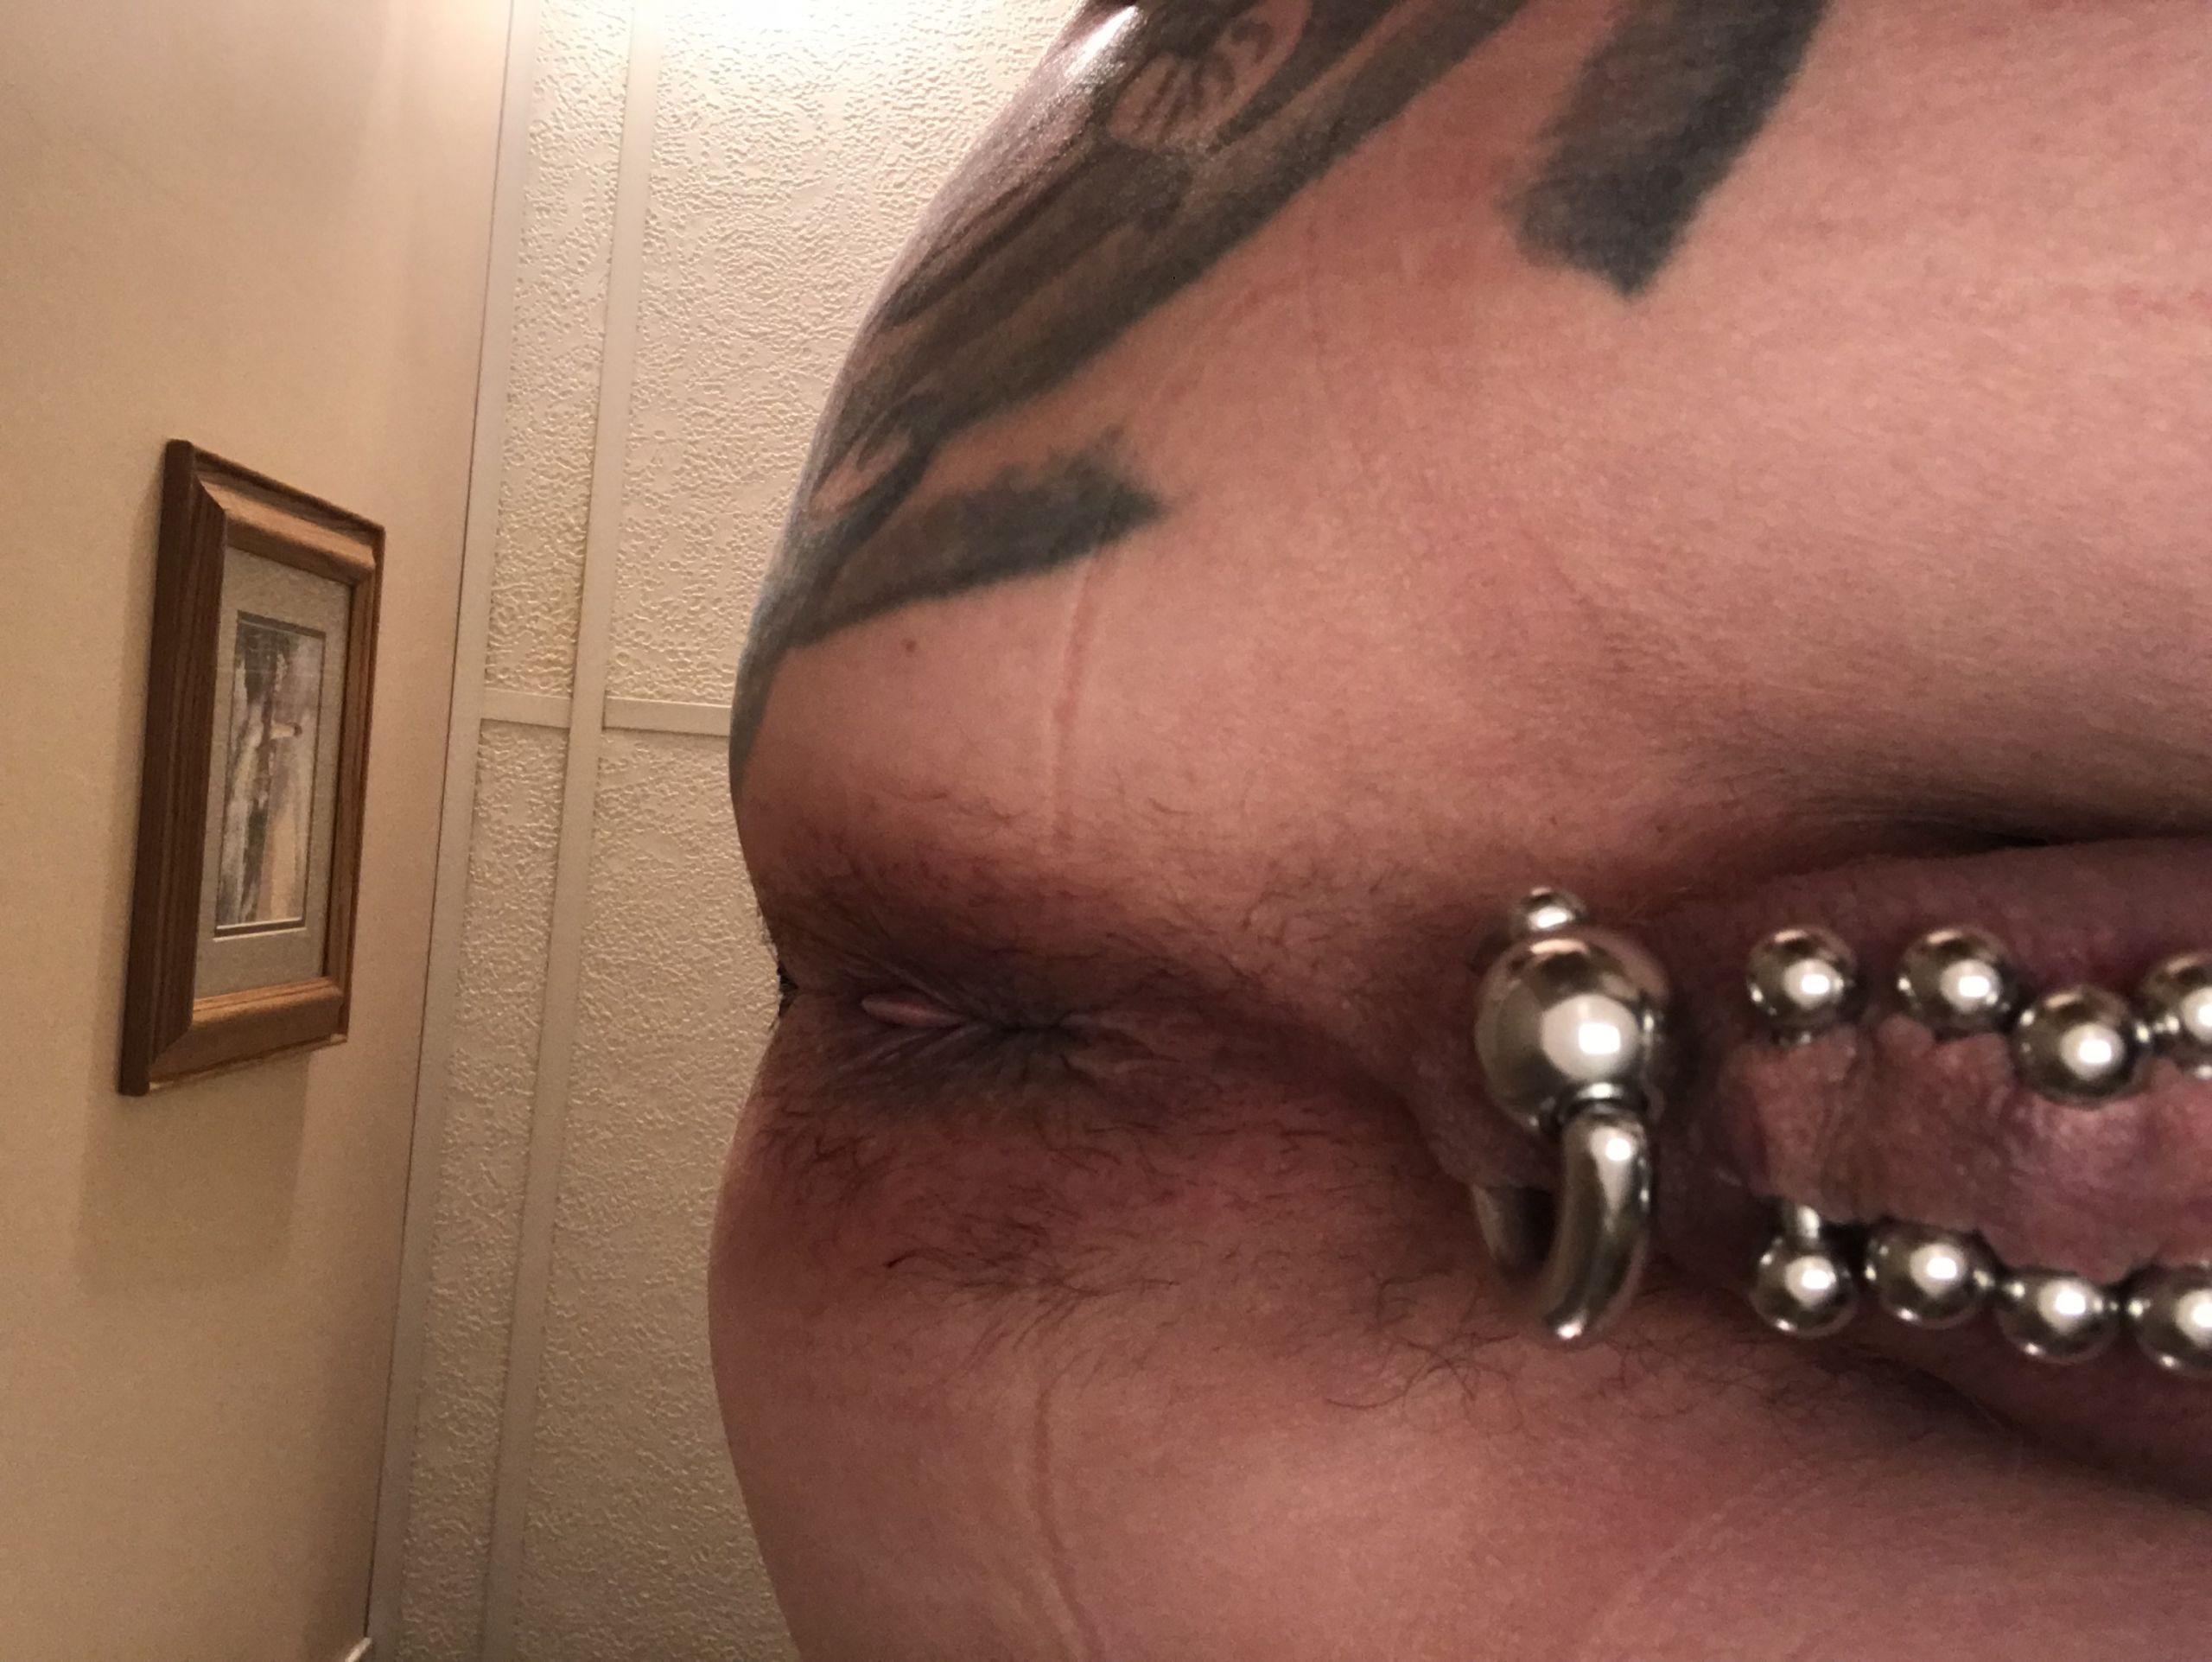 More piercings